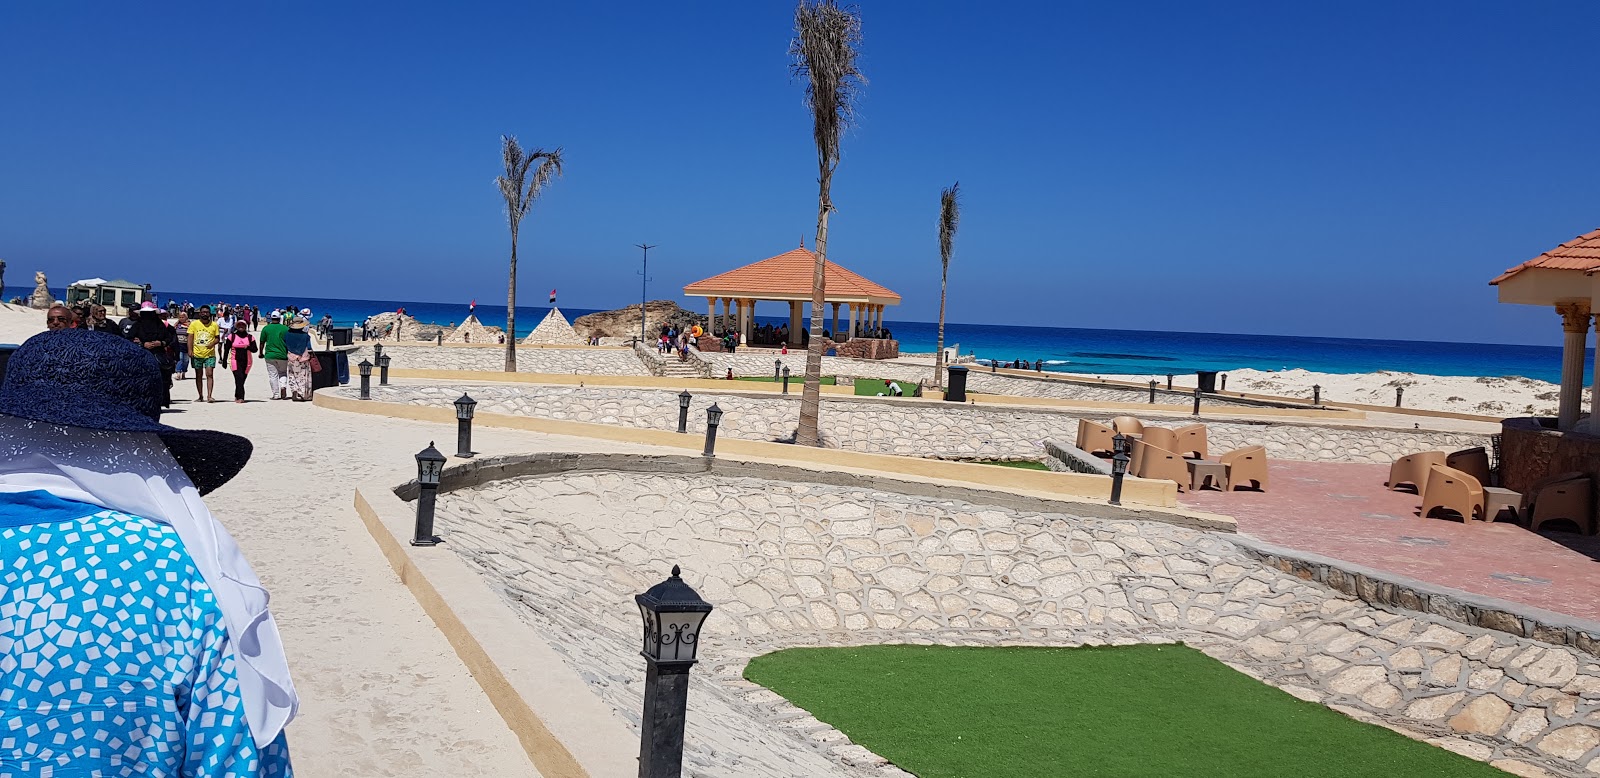 Foto de Eagles Resort in Cleopatra Beach - recomendado para viajantes em família com crianças